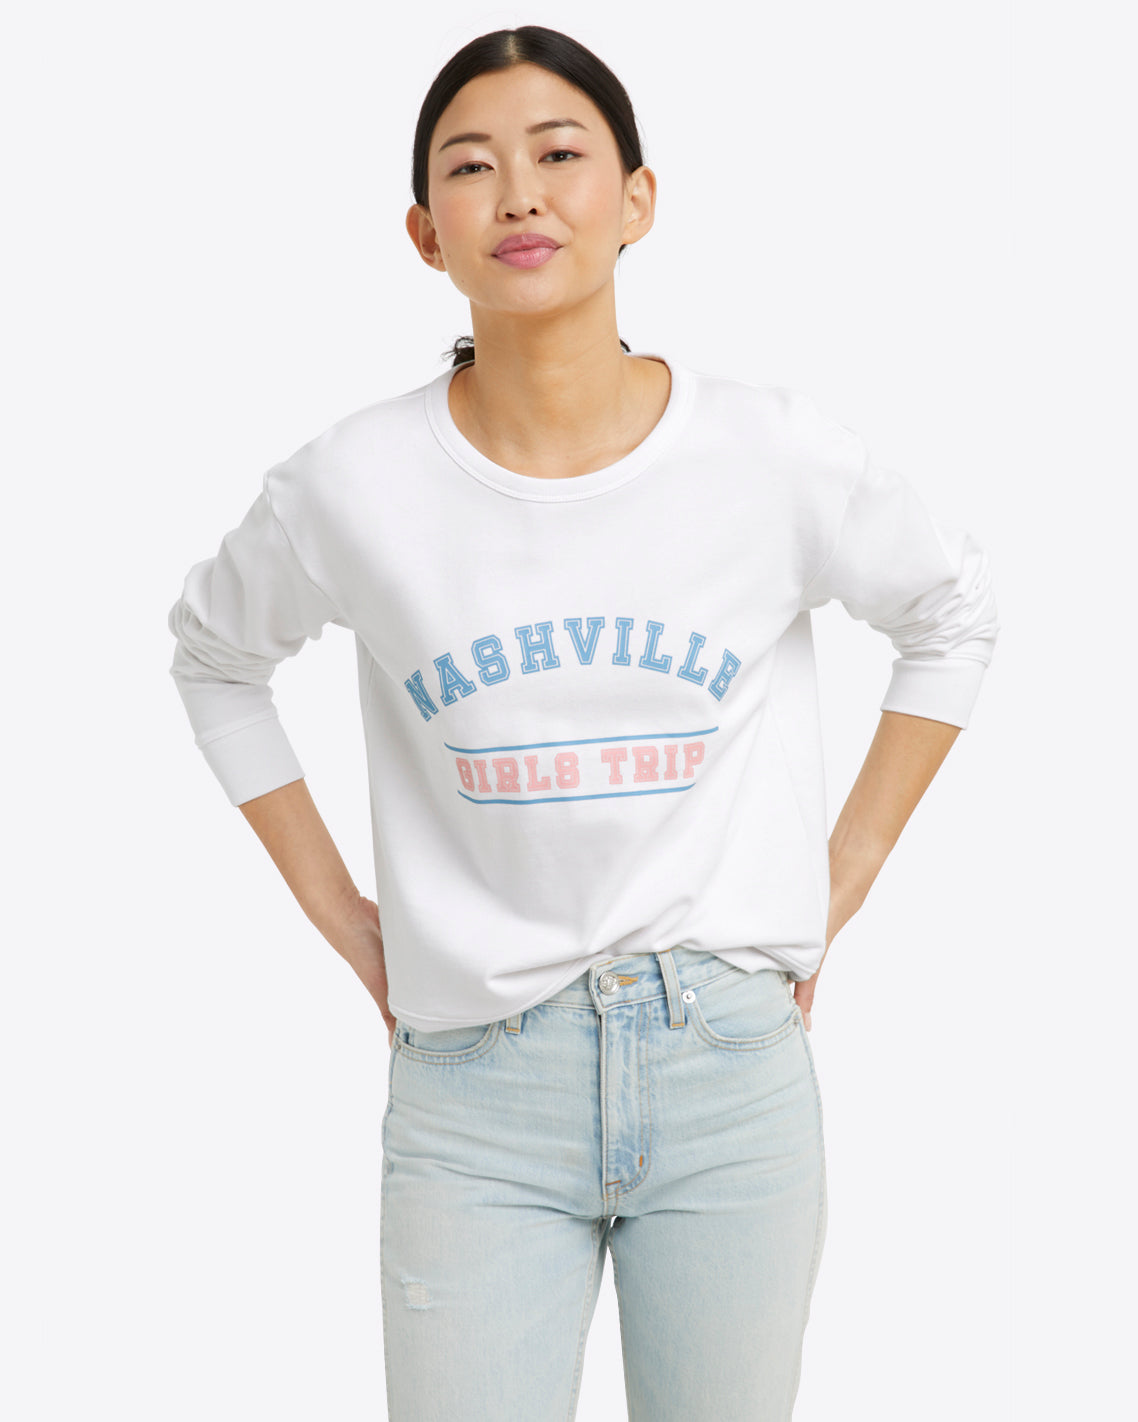 Nashville Girls Trip Sweatshirt